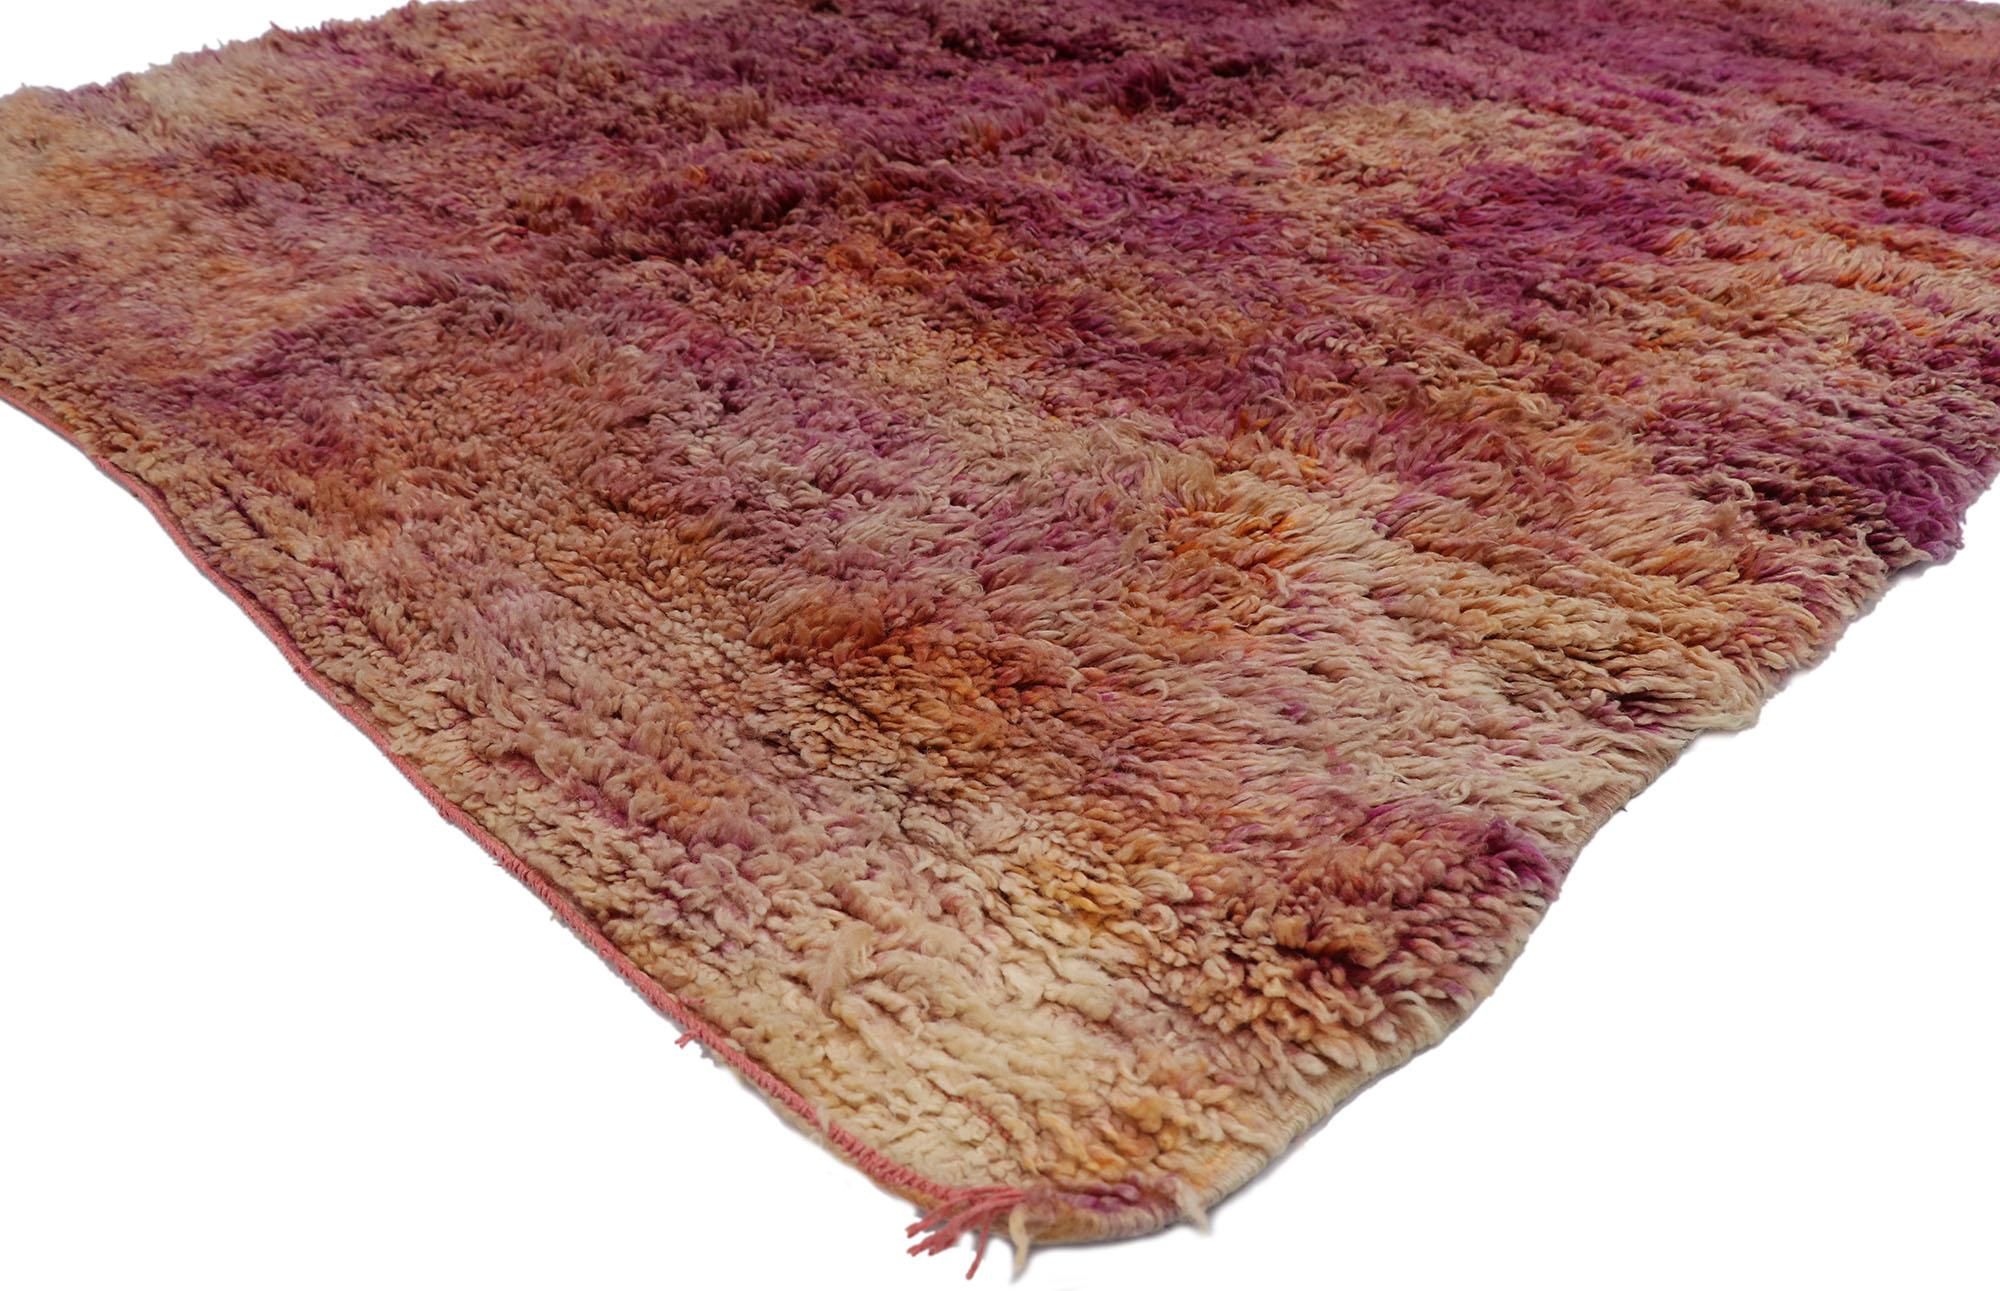 21479 Tapis marocain Vintage Beni Mrirt, 06'07 x 07'11. Les tapis Beni Mrirt représentent une tradition chérie du tissage marocain, loués pour leur texture luxueuse, leurs motifs géométriques et leurs teintes terreuses apaisantes. Fabriqués à la